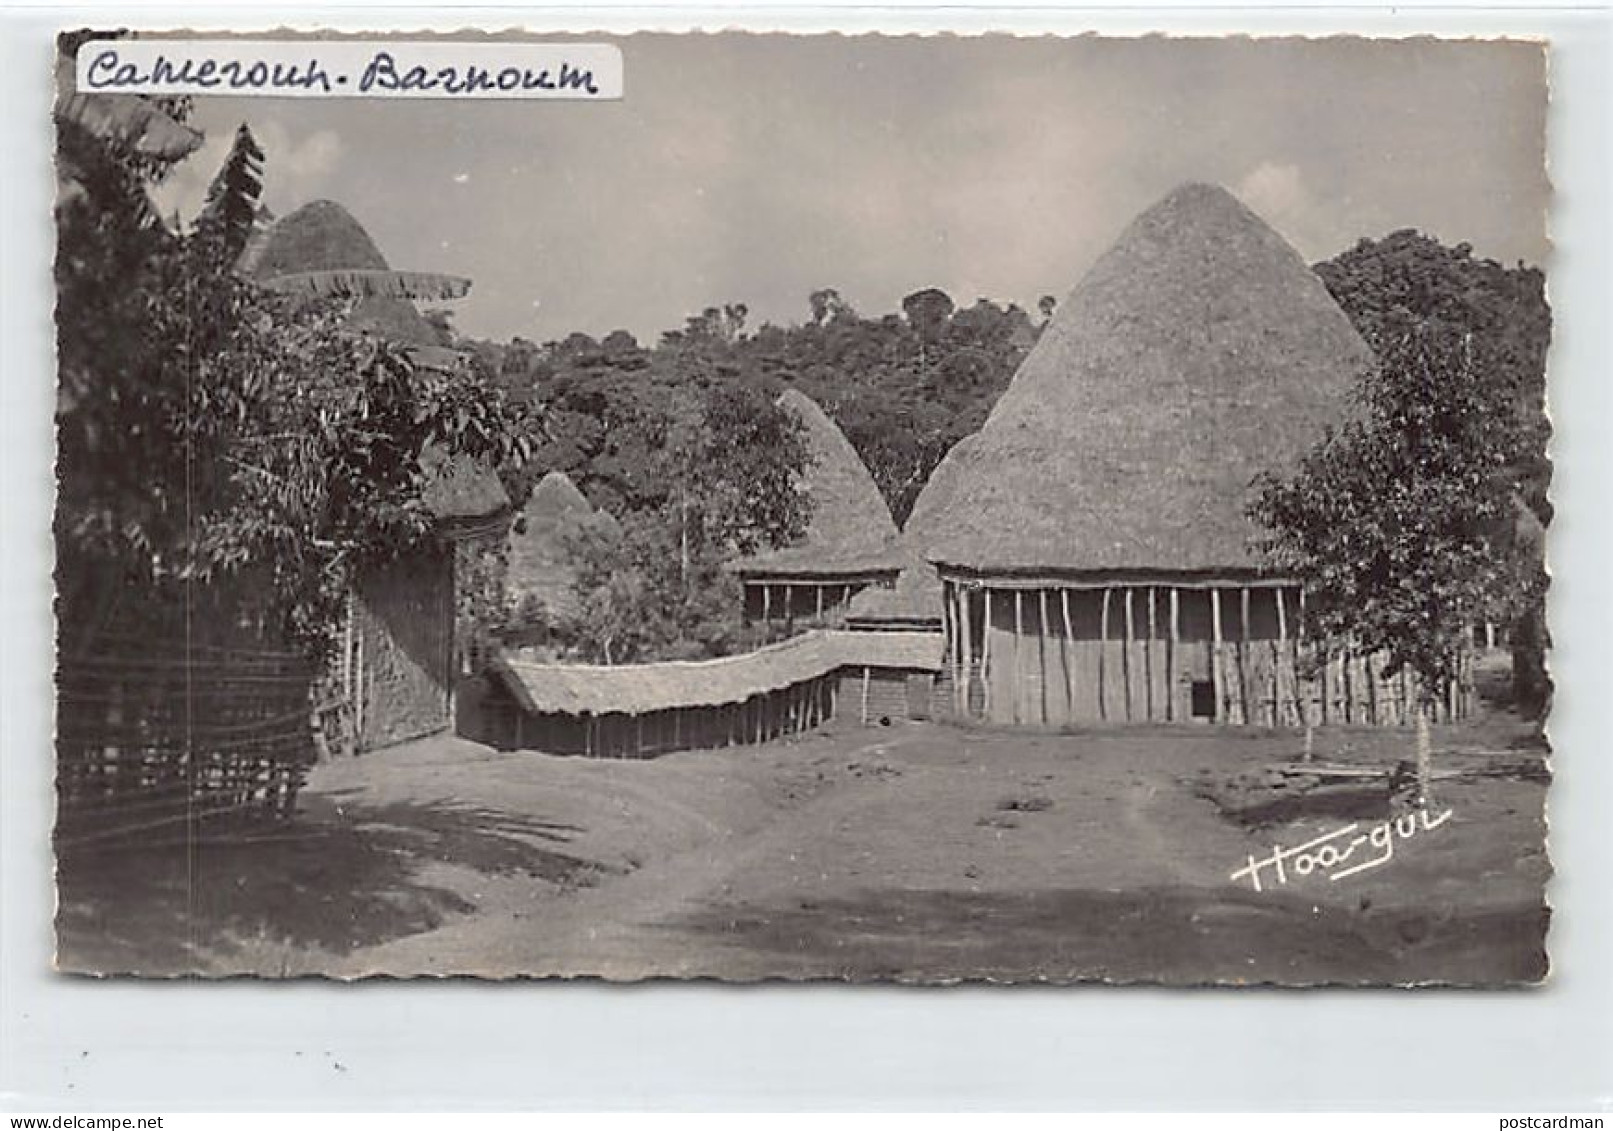 Cameroun - BANDJOUM - Case Bamoun - Ed. R. Guerpillon 25 - Kamerun